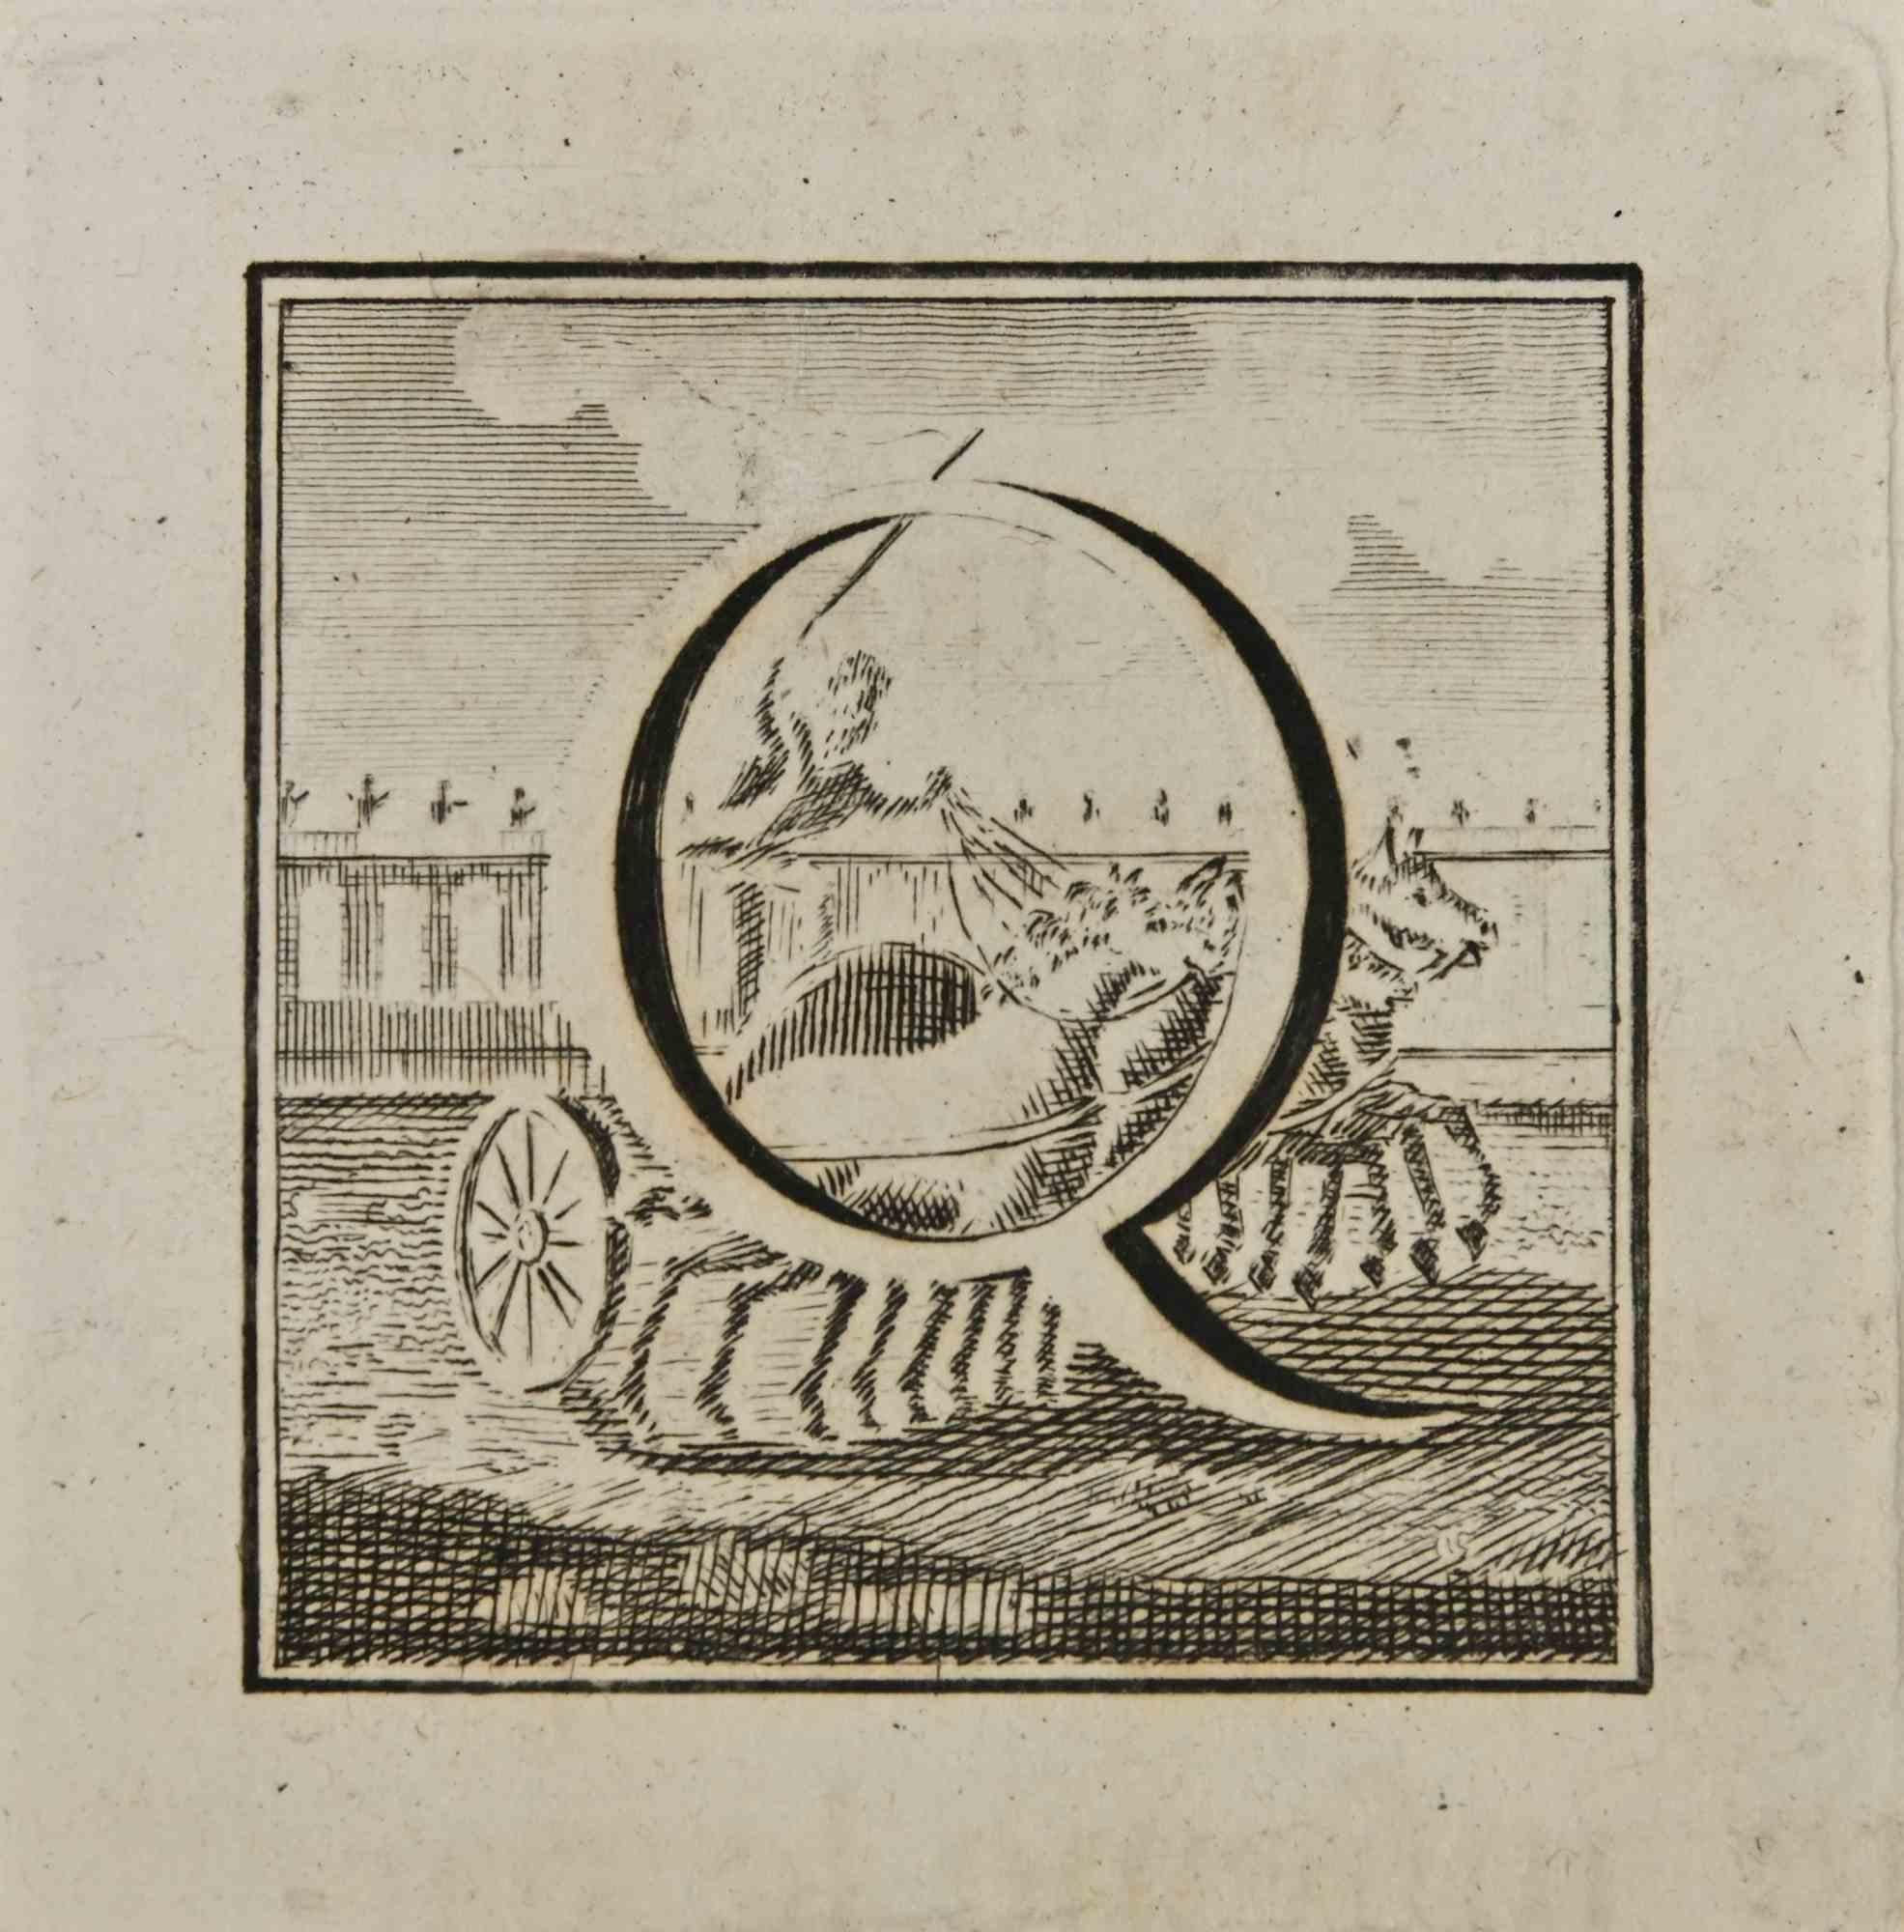 Lettre de l'alphabet D,  de la série "Antiquités d'Herculanum", est une gravure sur papier réalisée par Luigi Vanvitelli au 18ème siècle.

Bon état avec quelques rousseurs.

La gravure appartient à la suite d'estampes "Antiquités d'Herculanum